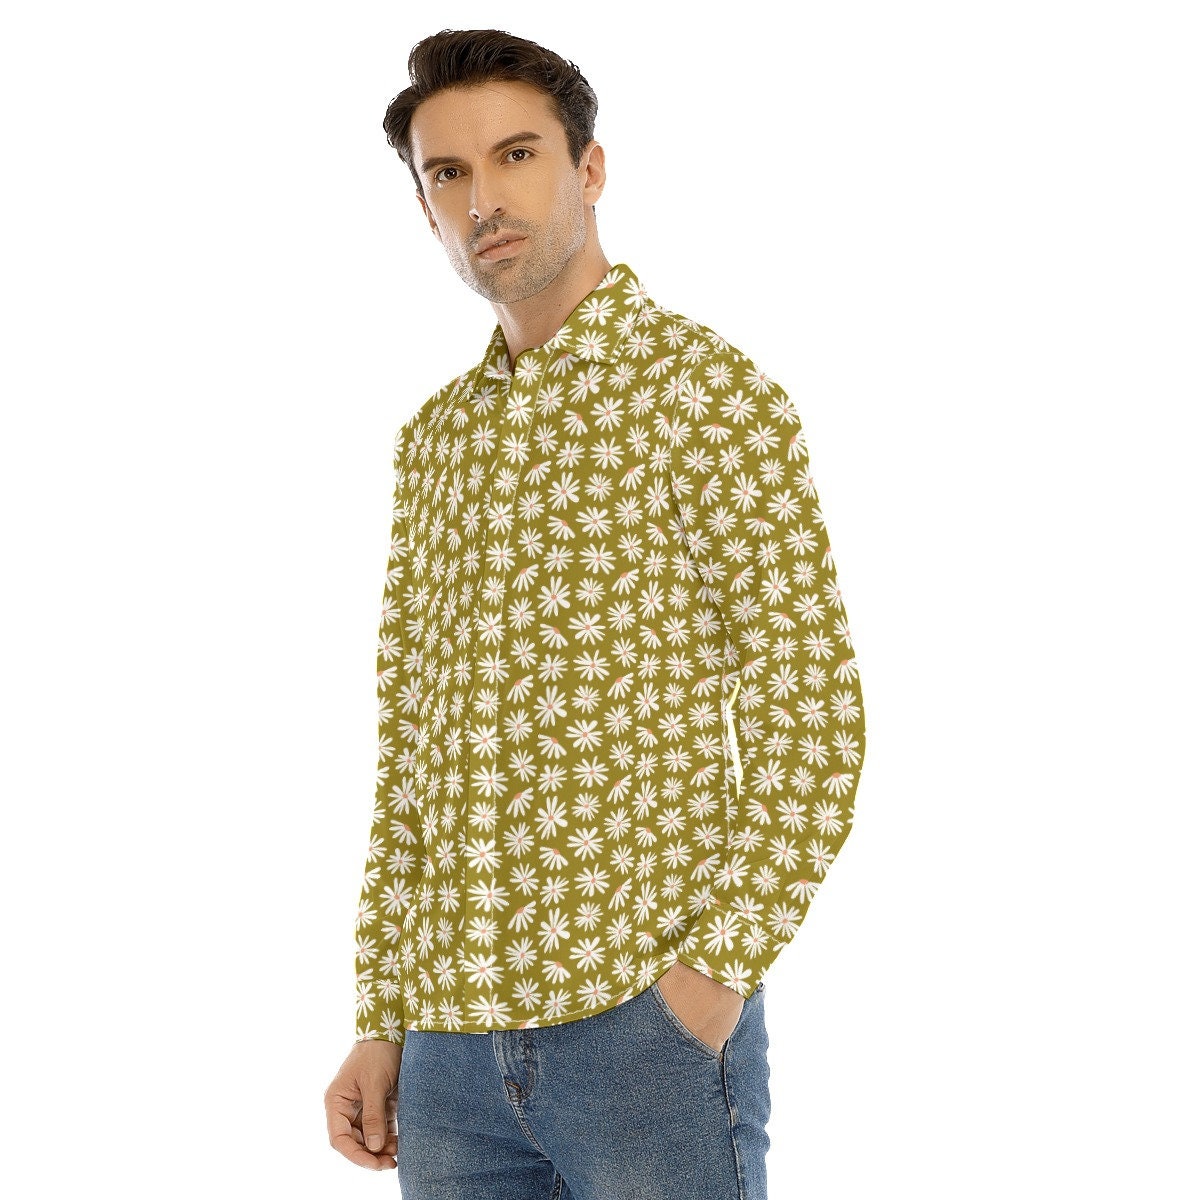 chemise de style vintage des années 70, chemise florale verte pour hommes, vêtements pour hommes des années 70, chemise rétro pour hommes, chemise hippie pour hommes, chemise pour hommes des années 70, chemise inspirée des années 70